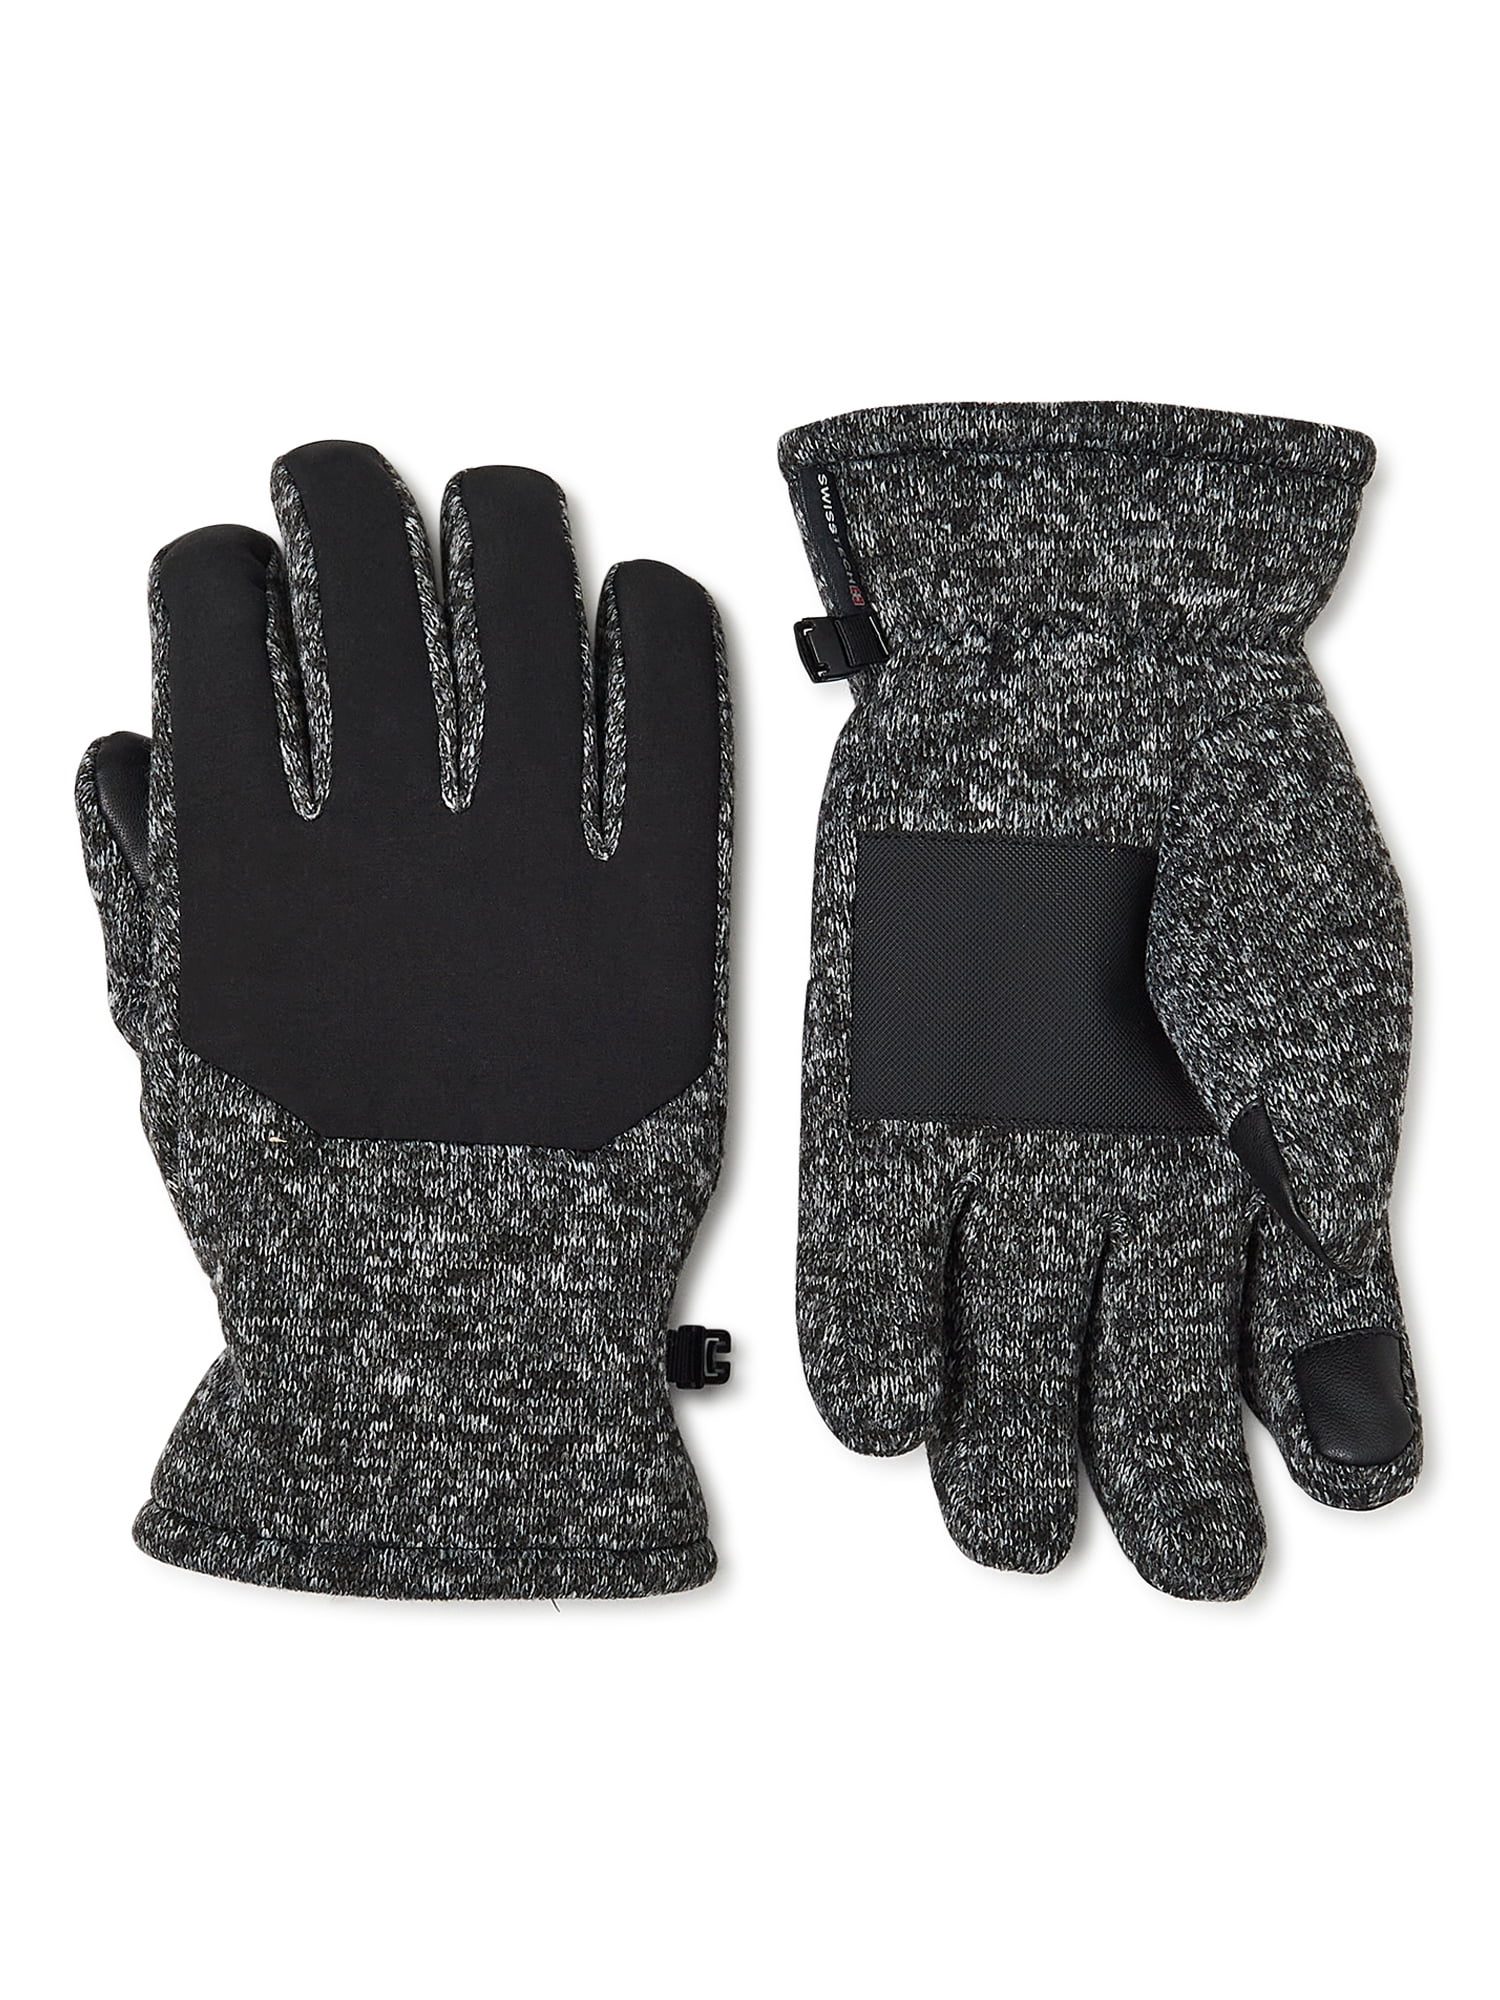 Swiss Tech Men's Fleece Gloves - Walmart.com